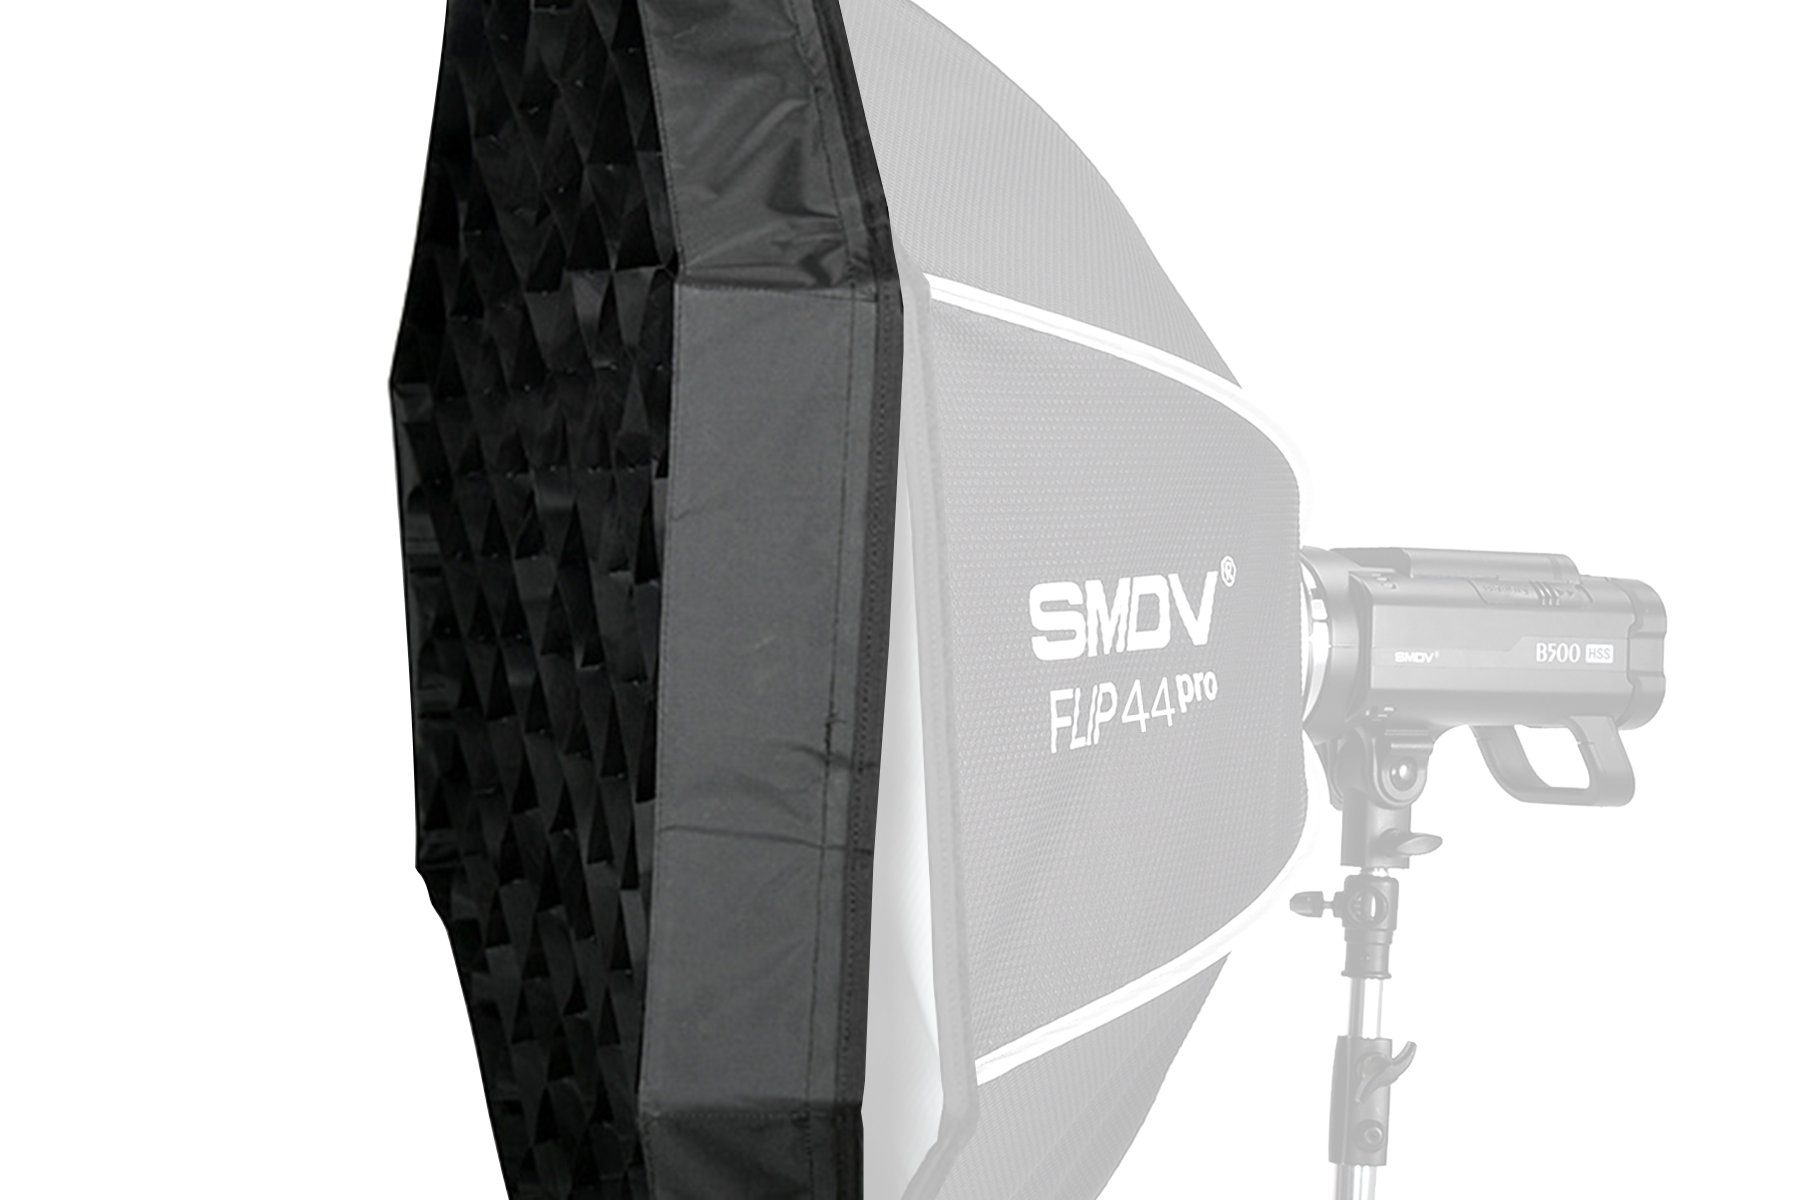 Speedbox 110cm - Wabenaufsatz Softbox 44", GRID SMDV FLIP Impulsfoto Klett-System Für